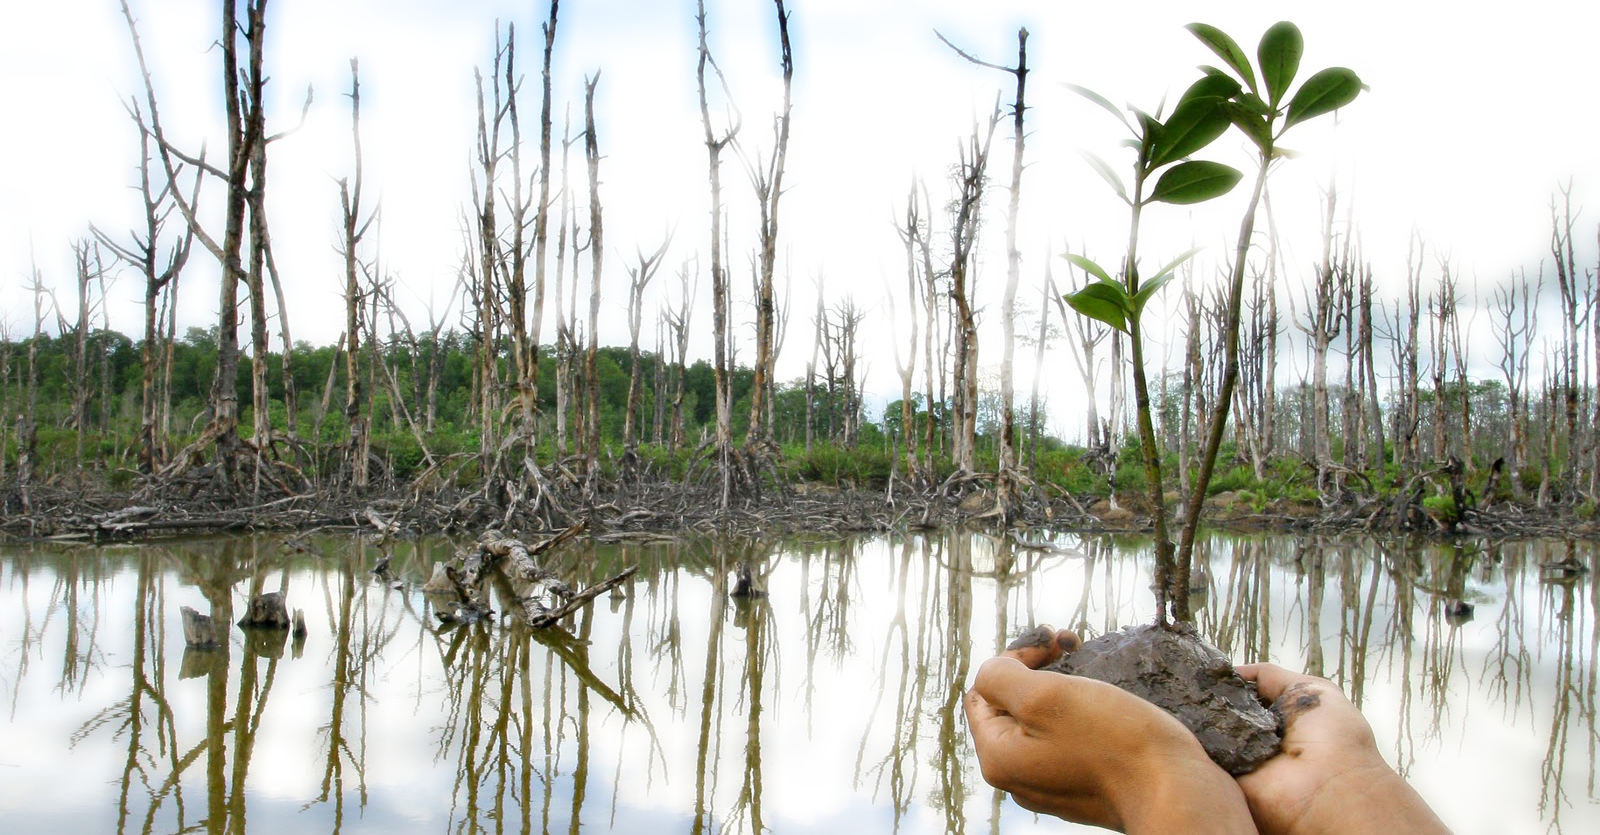 Makalah Hutan Bakau (Mangrove) Pelestarian ~ Academindo